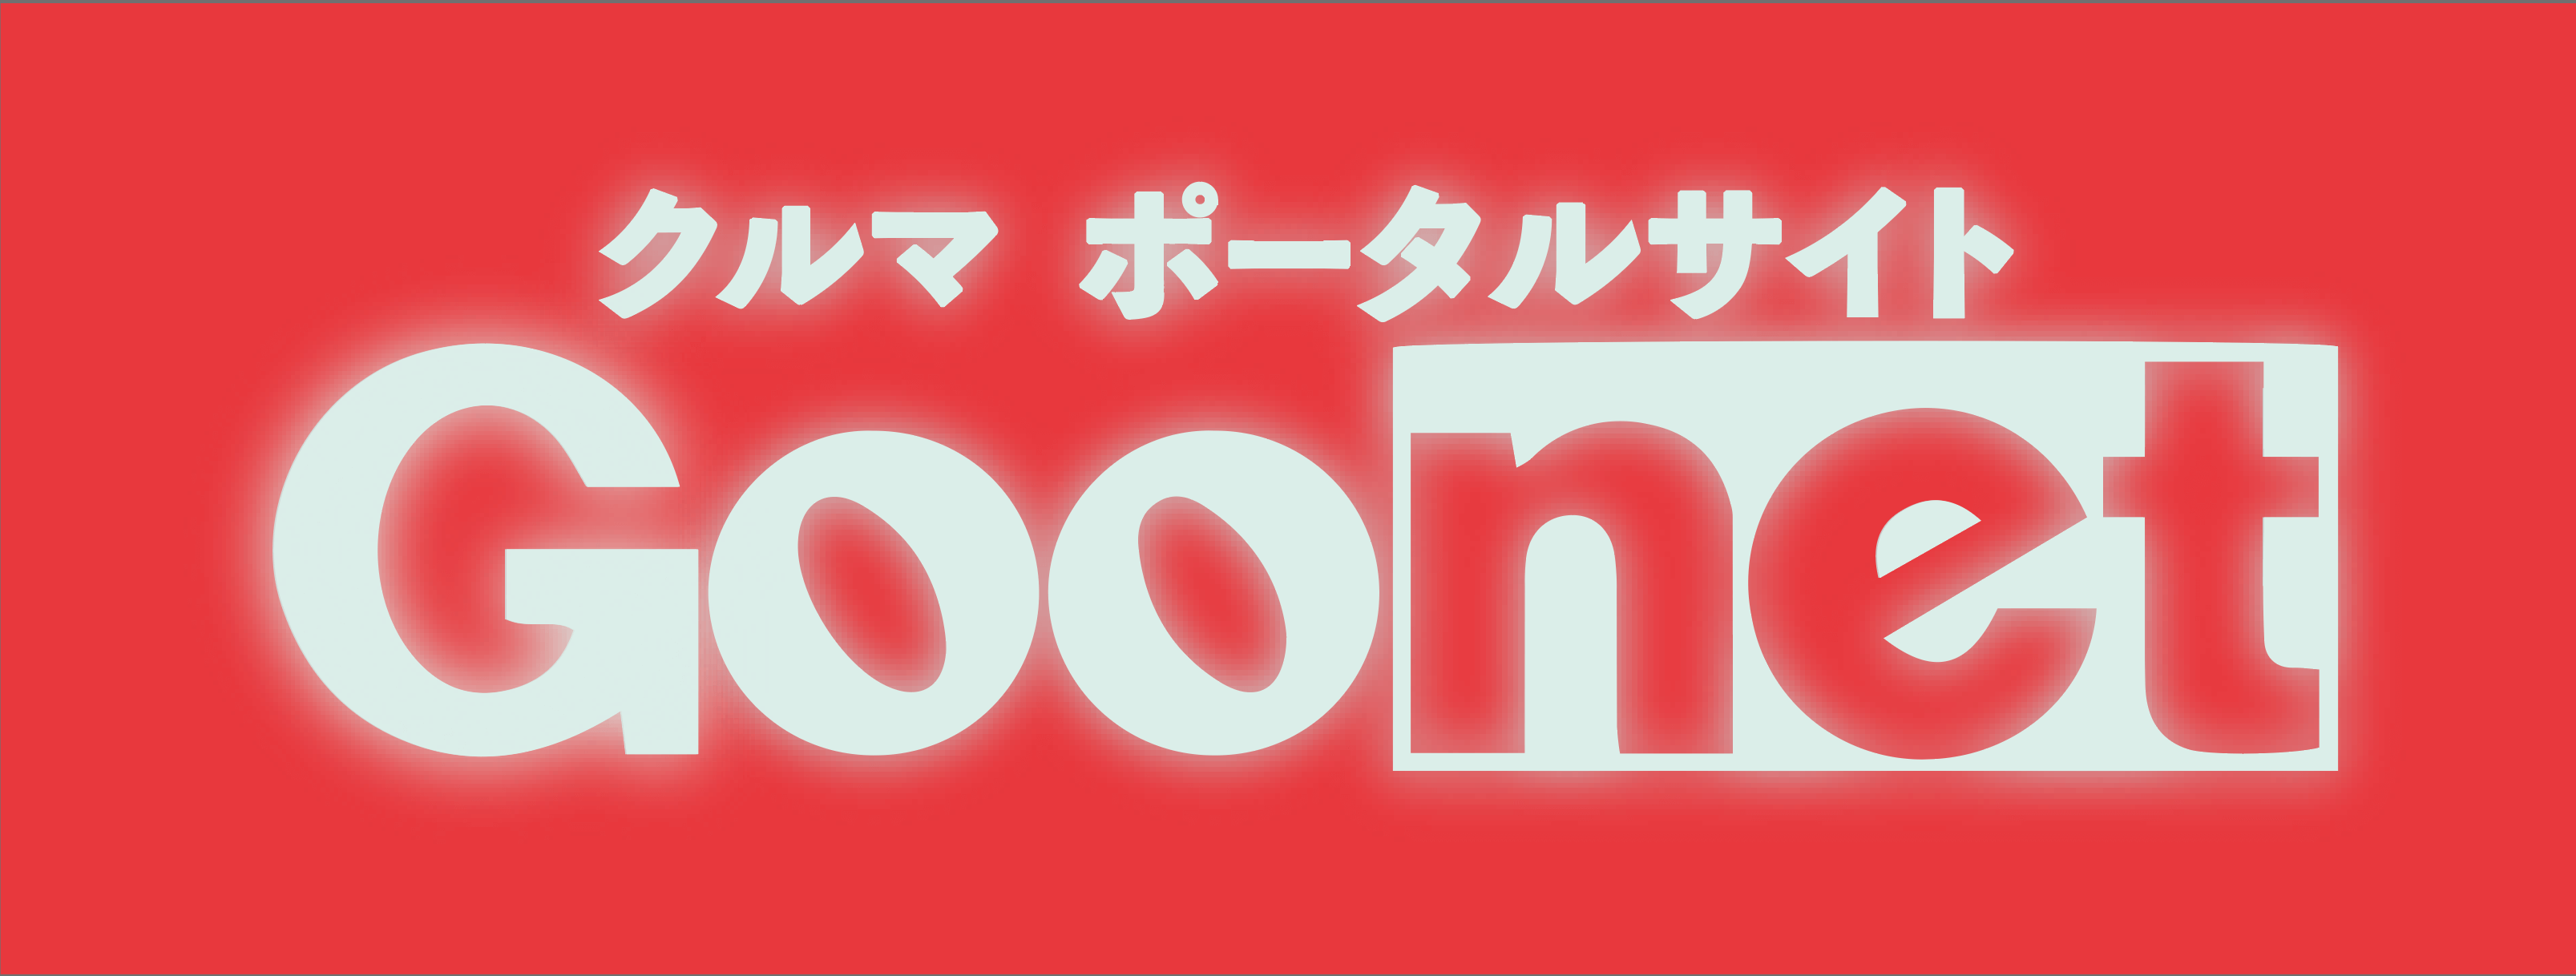 goonet_banner